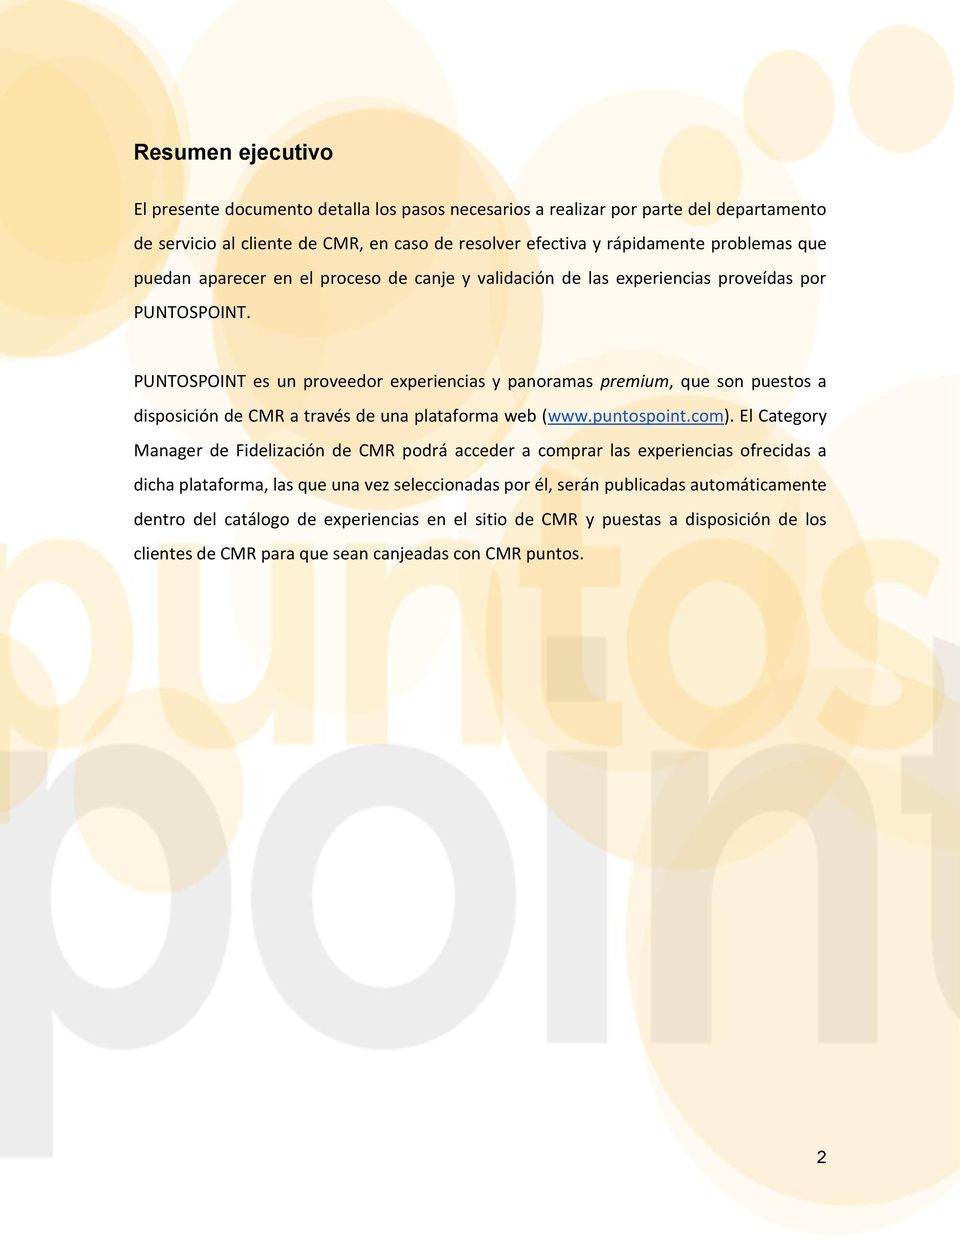 PUNTOSPOINT es un proveedor experiencias y panoramas premium, que son puestos a disposición de CMR a través de una plataforma web (www.puntospoint.com).